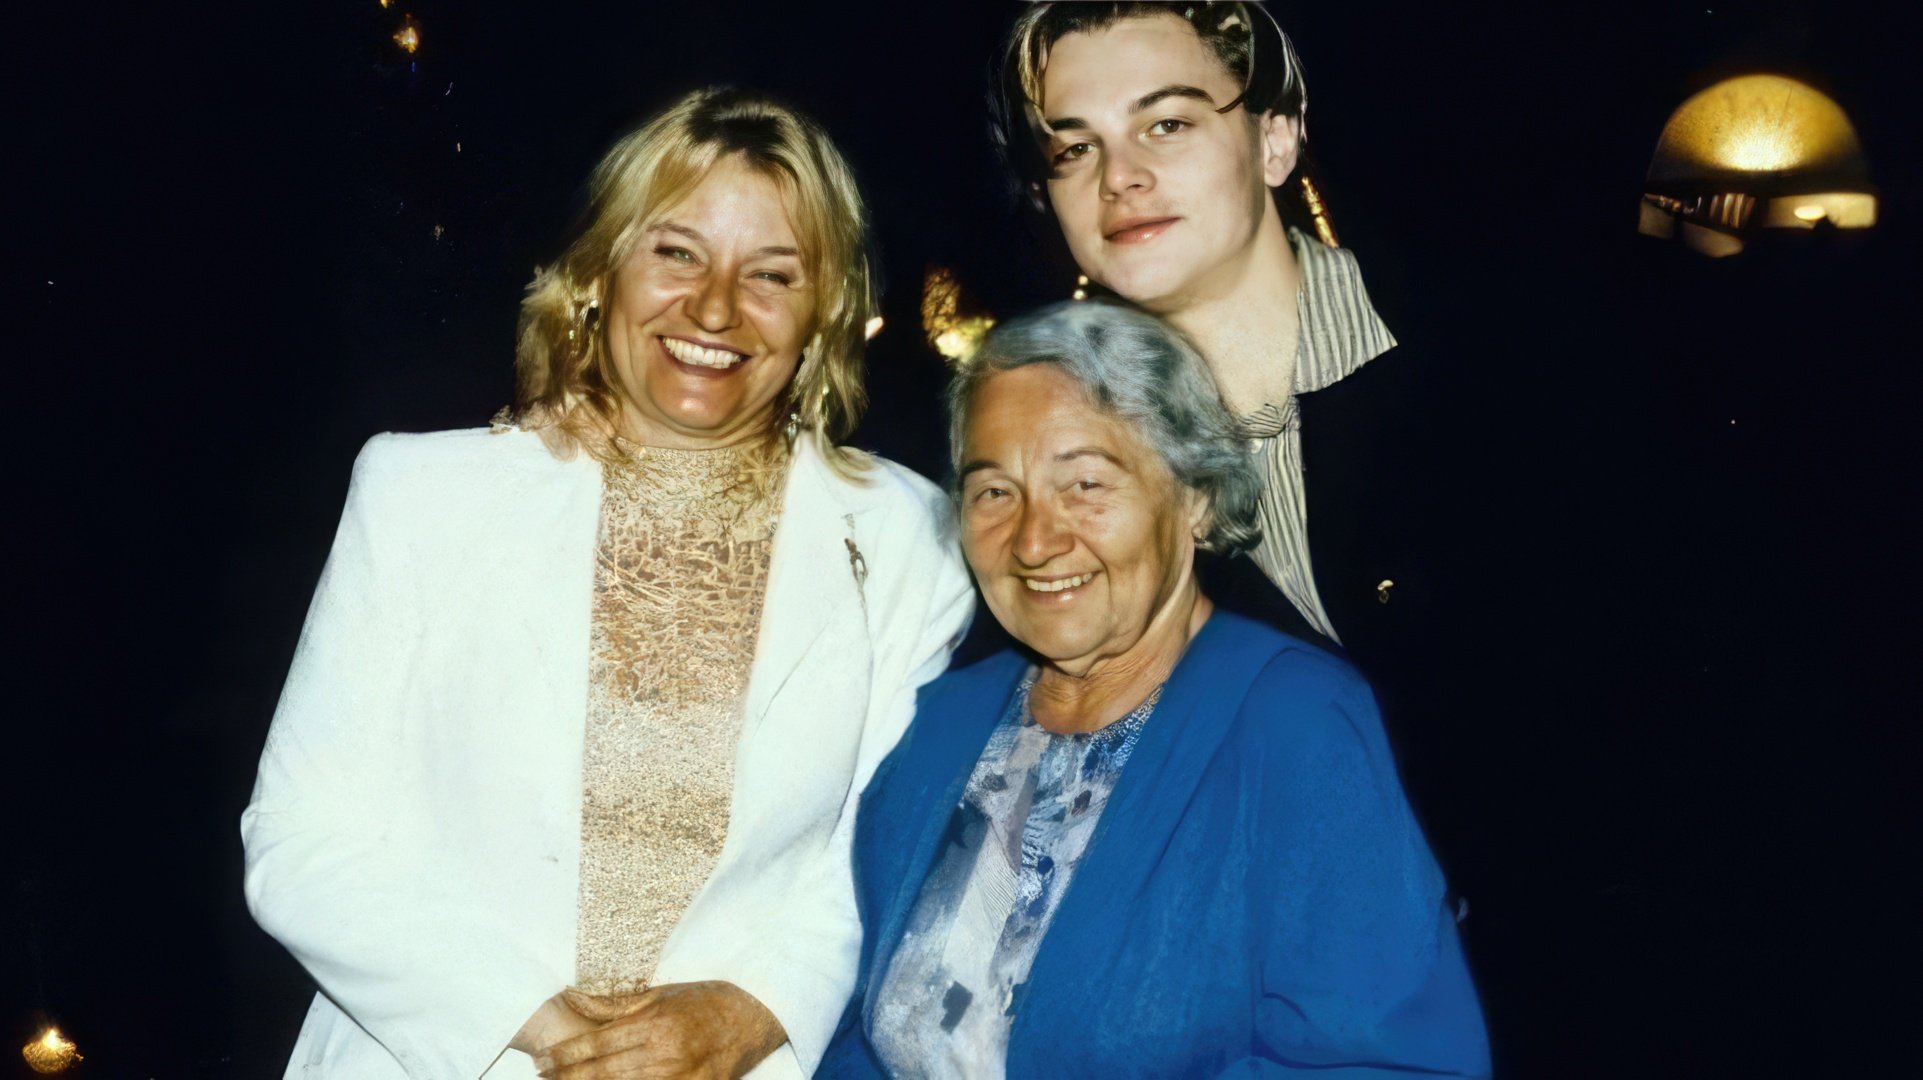 Leonardo DiCaprio's grandmother (center) was born in the Russian Empire